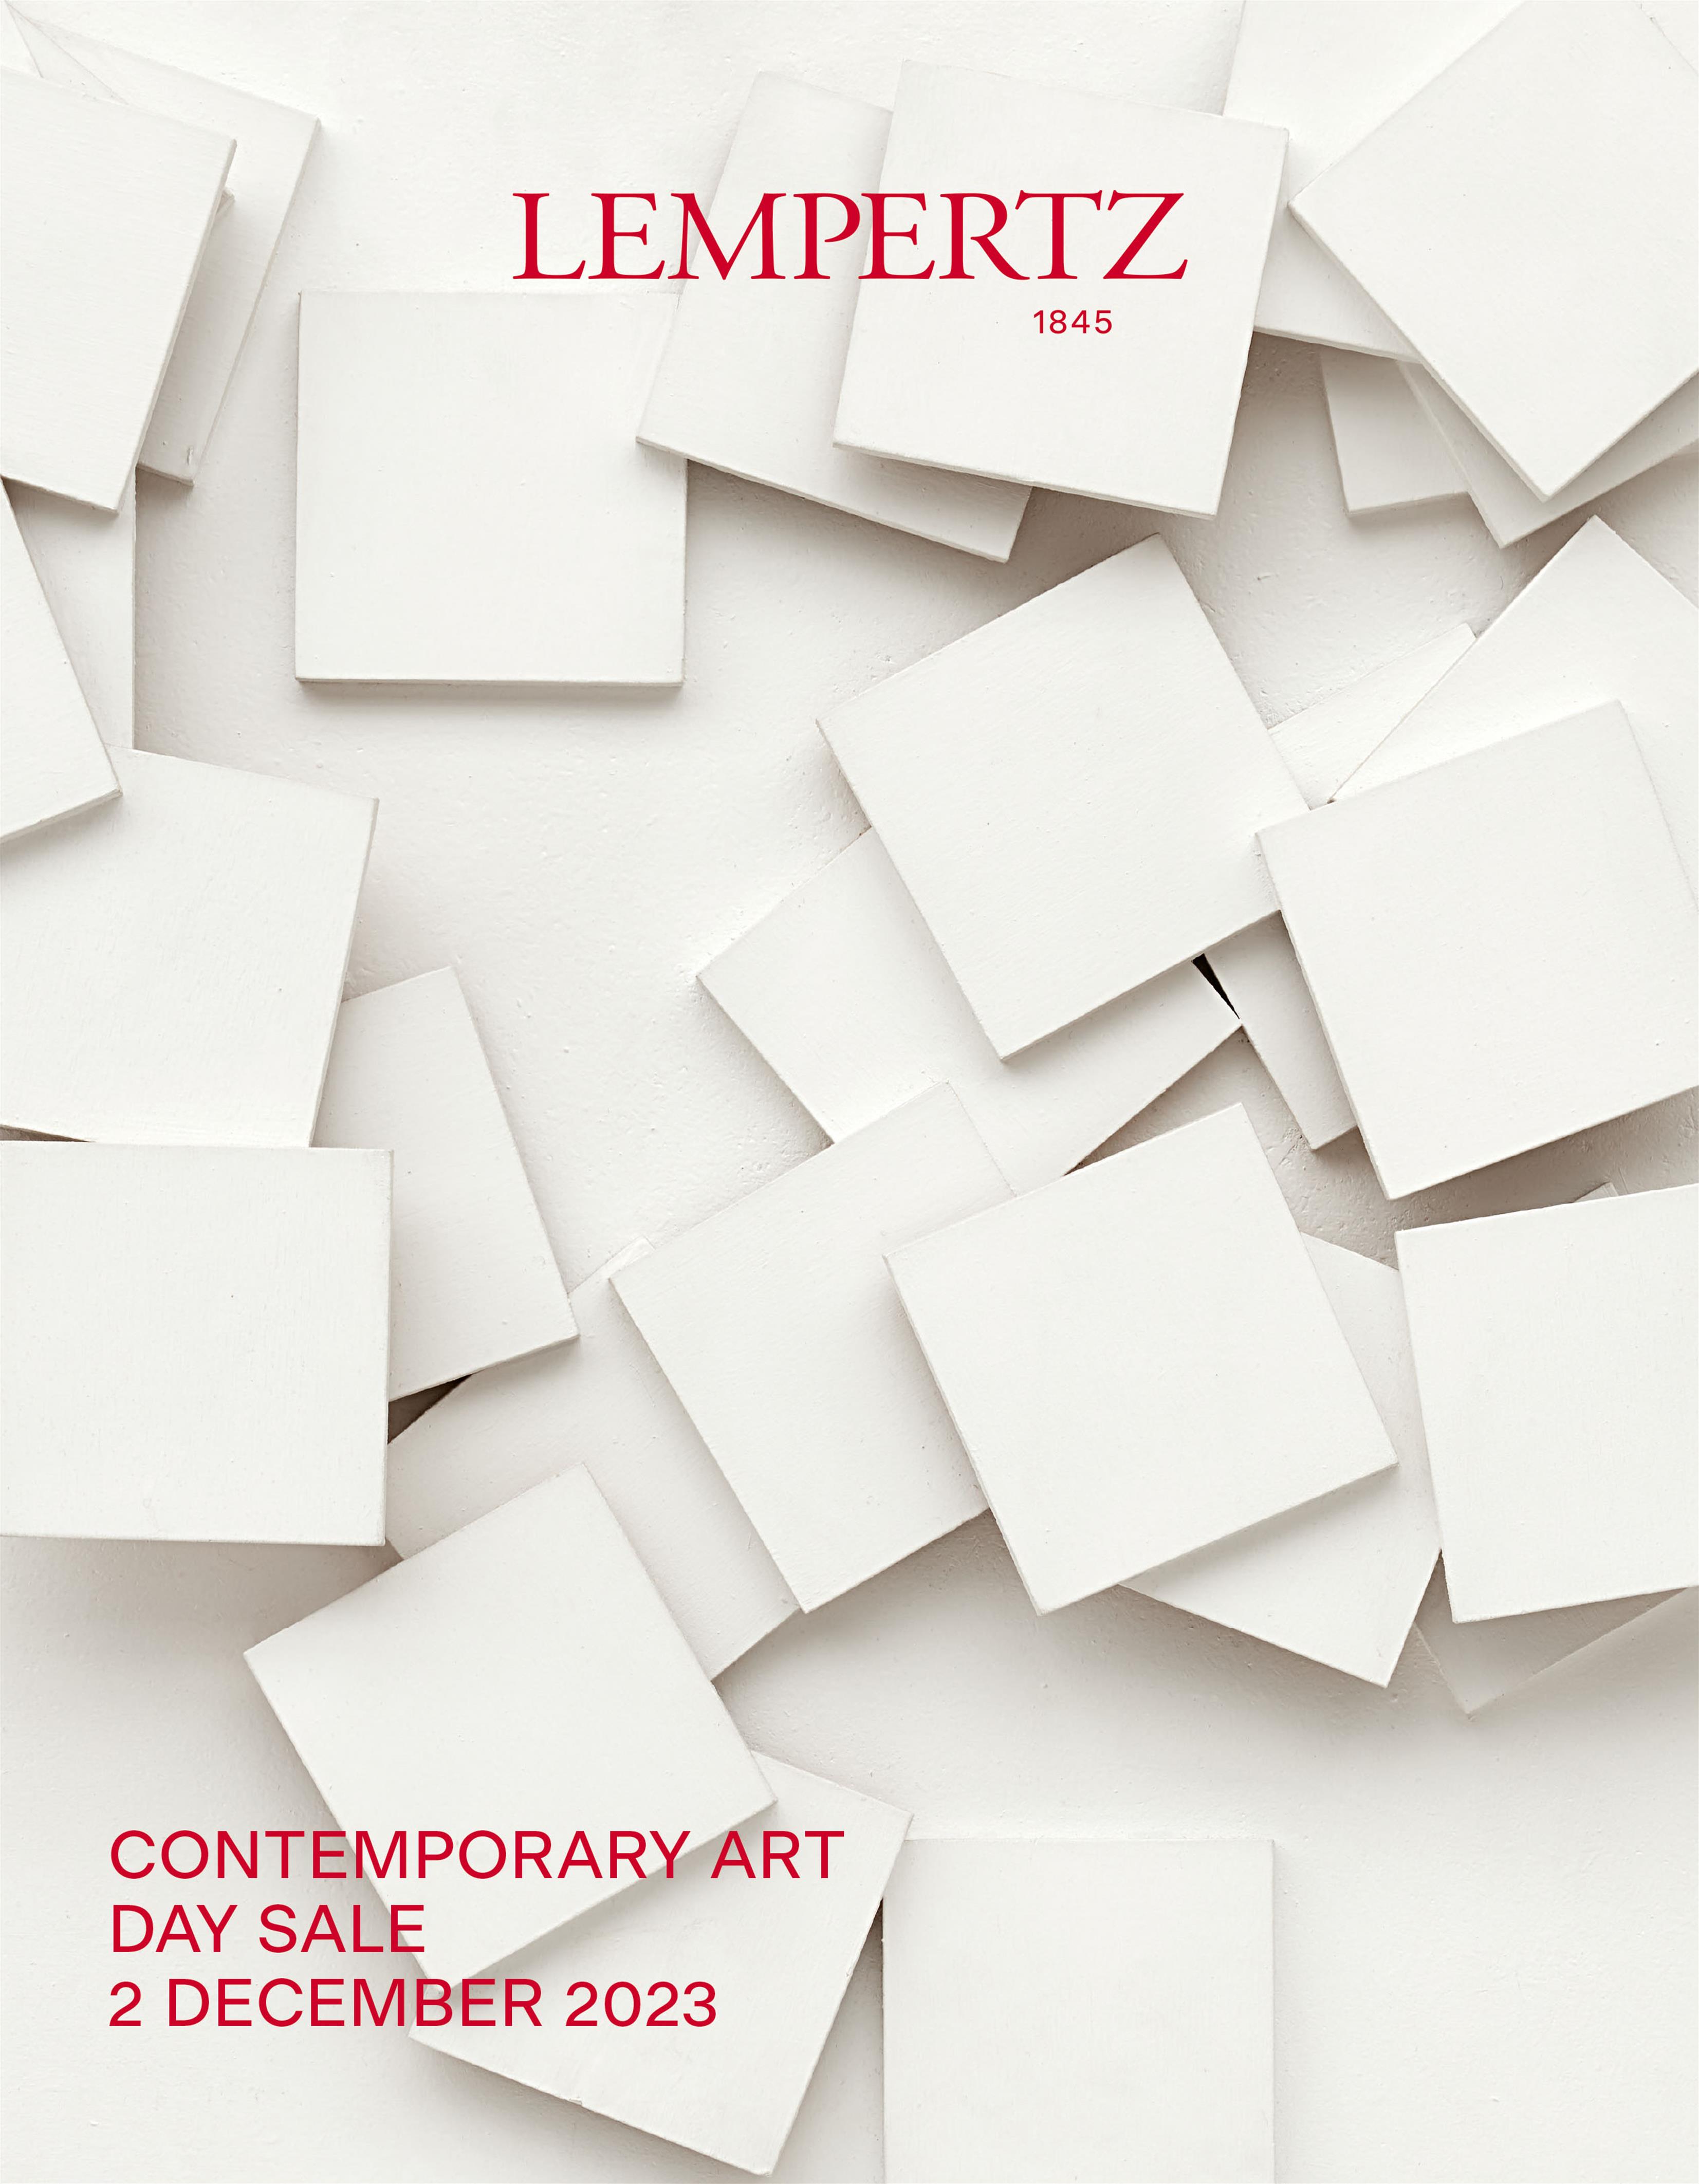 Auktionskatalog - Day Sale -  Zeitgenössische Kunst - Online Katalog - Auktion 1234 – Ersteigern Sie hochwertige Kunst in der nächsten Lempertz-Auktion!